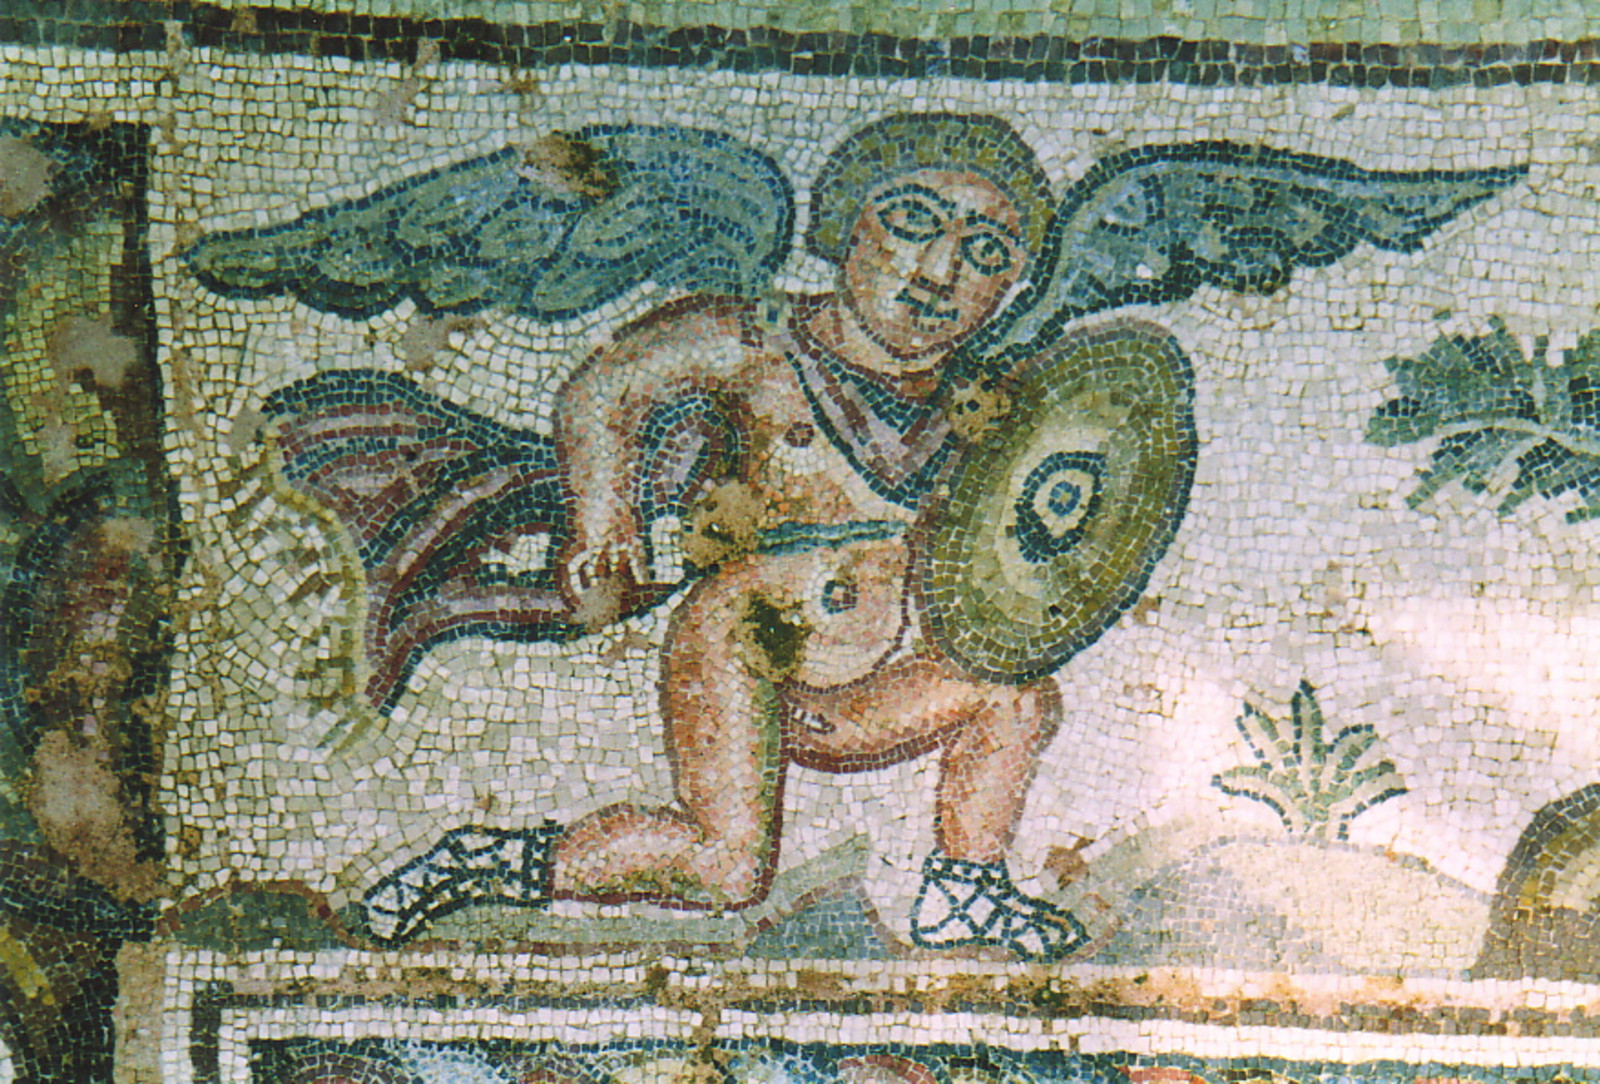 A Roman mosaic